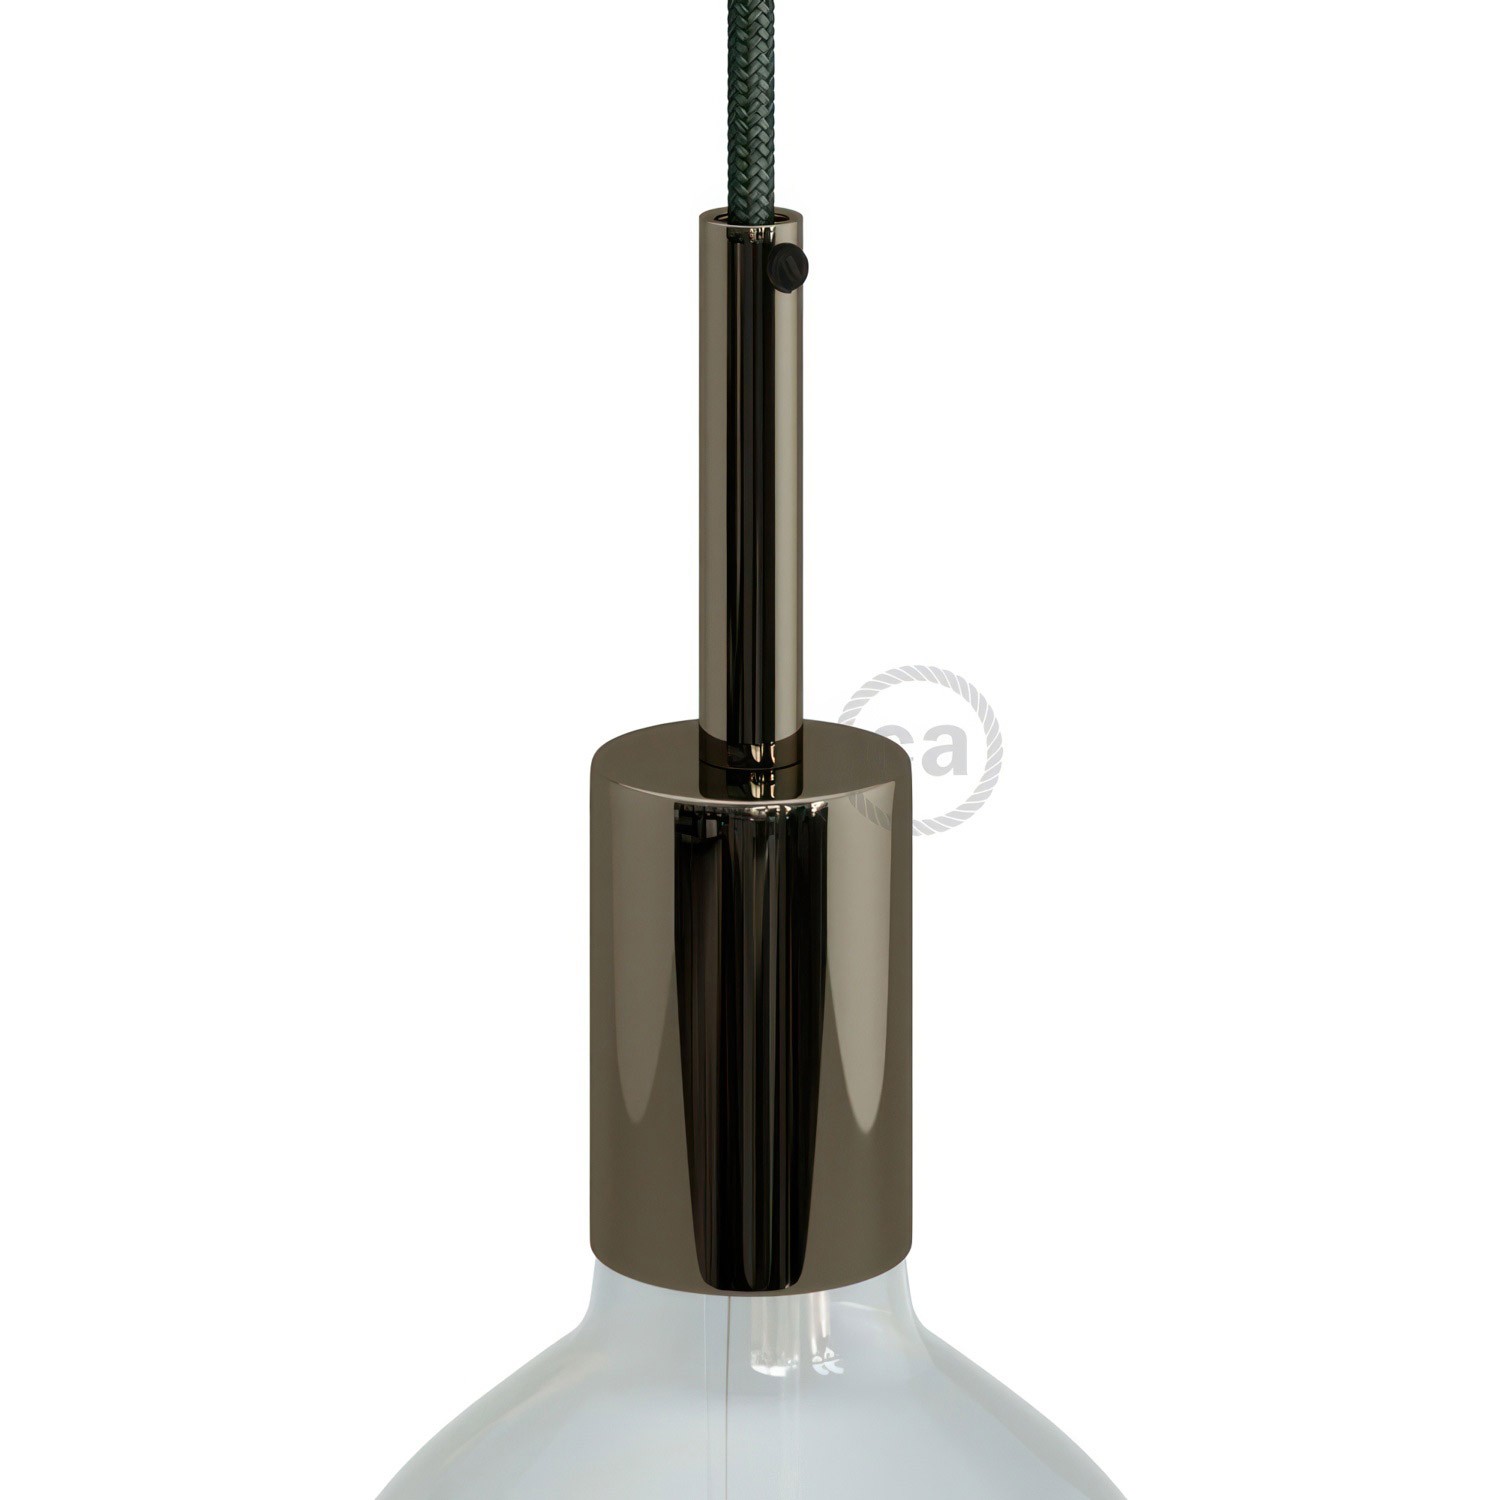 Zylindrisches E27-Lampenfassungs-Kit aus Metall mit 7 cm Kabelklemme